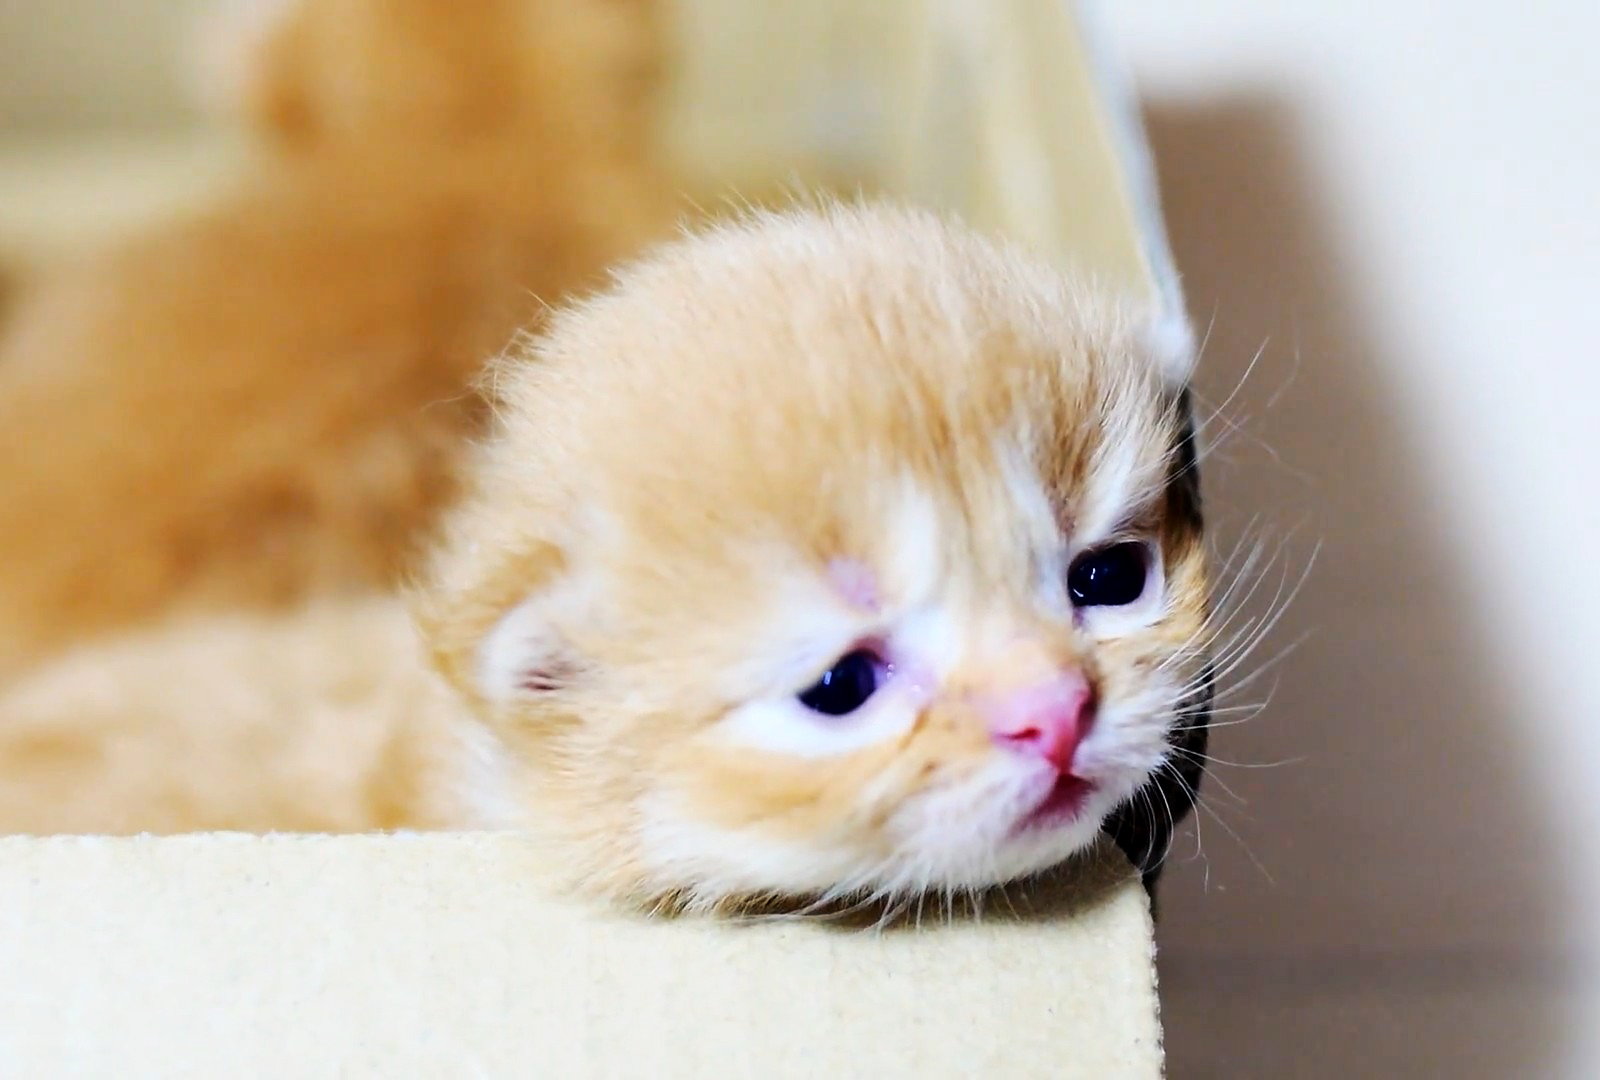 可爱的小奶猫长得像小毛球一样,好可爱啊